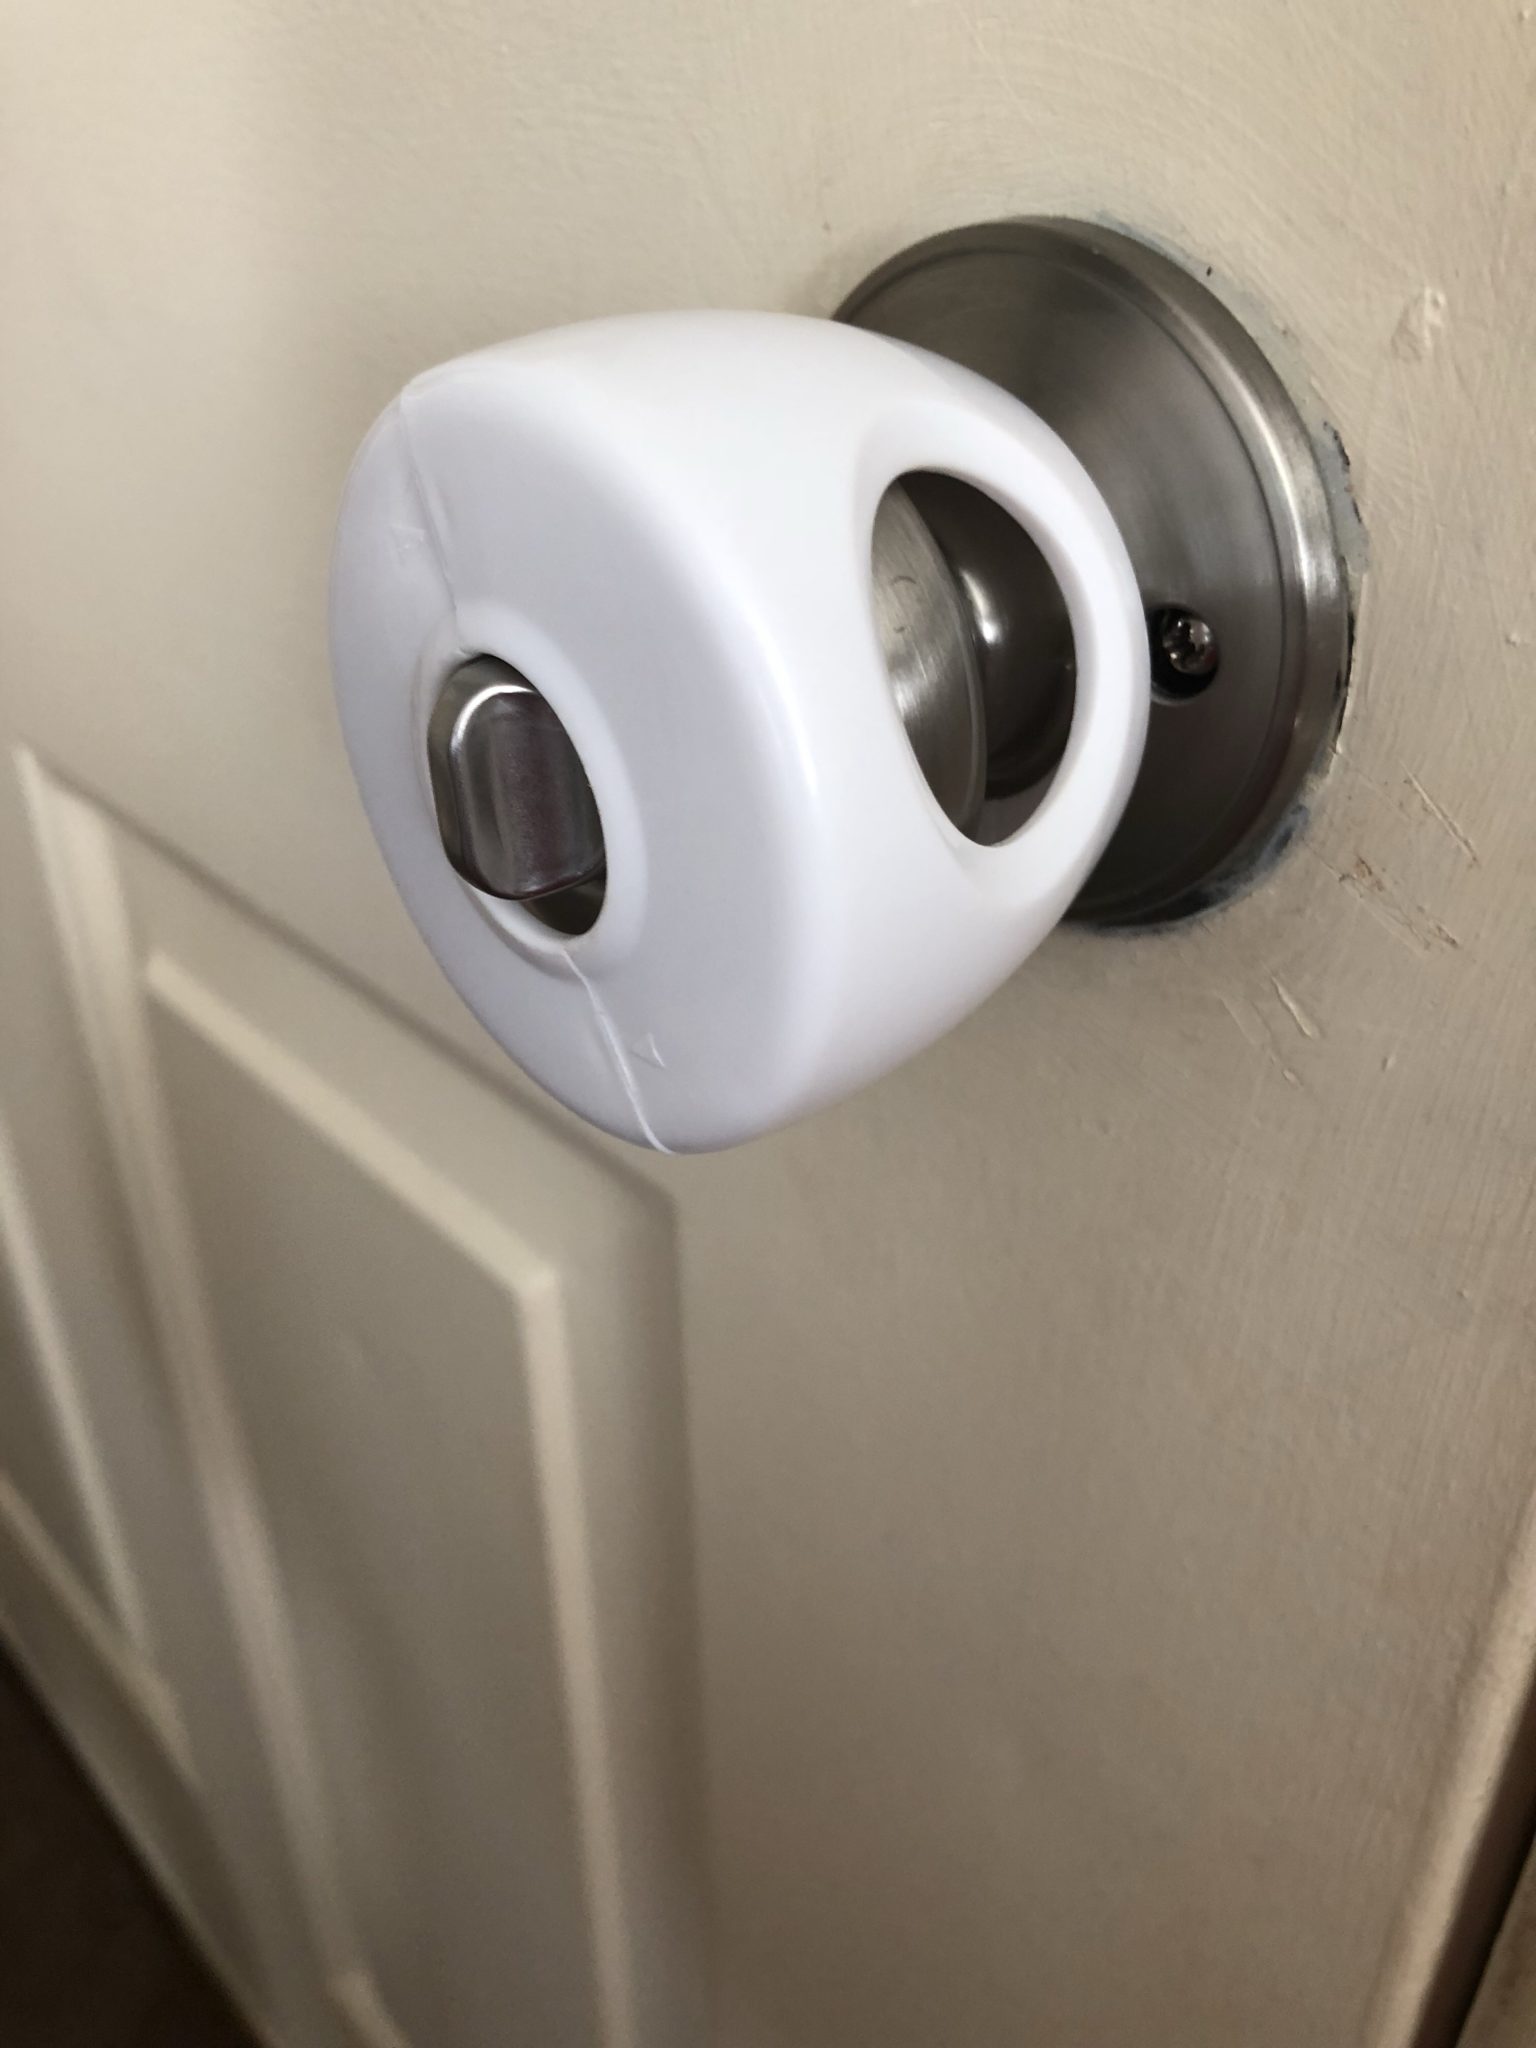 Doorknob with cover.